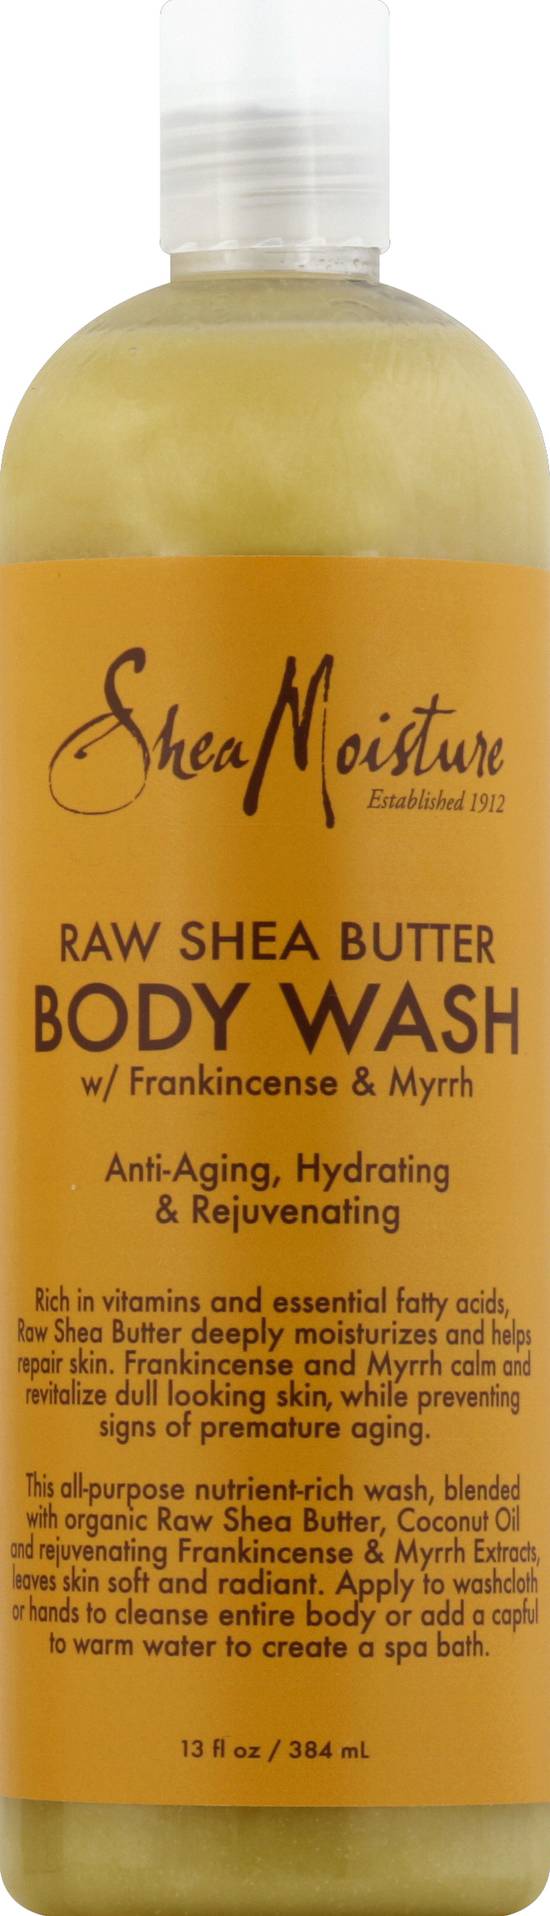 Shea Moisture Raw Shea Butter Body Wash